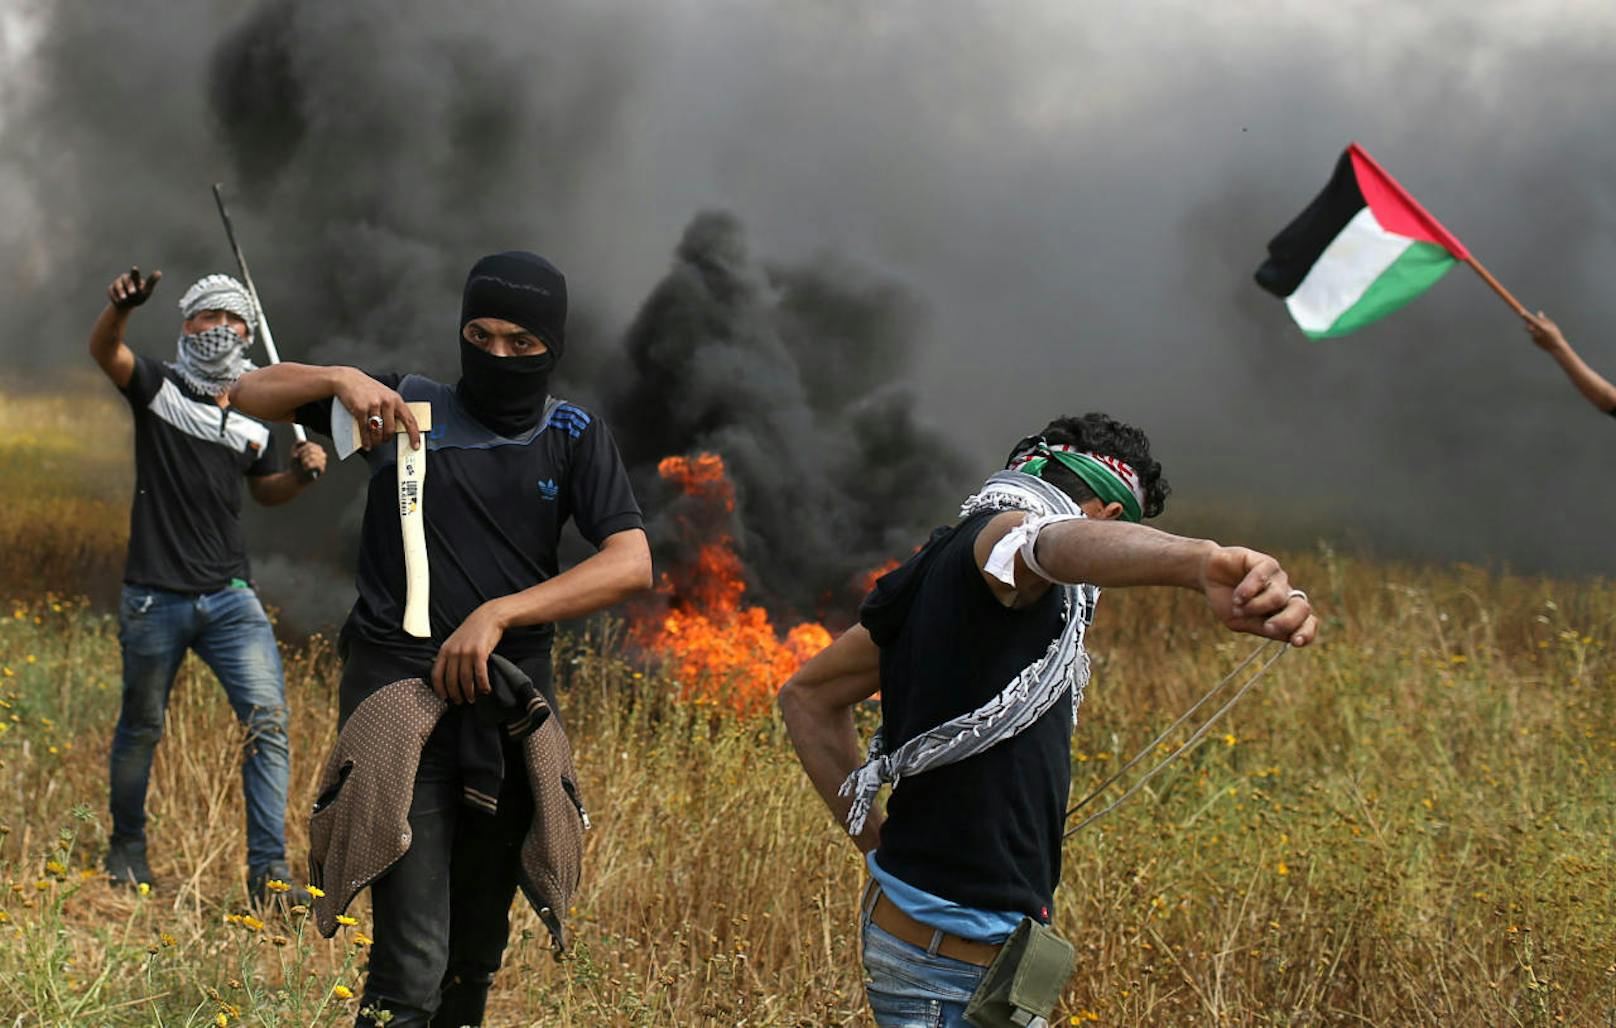 Die radikalislamische Hamas will mit einem "Marsch der Rückkehr" den Anspruch von Palästinensern untermauern, in das Gebiet des heutigen Israel zurückzukehren.